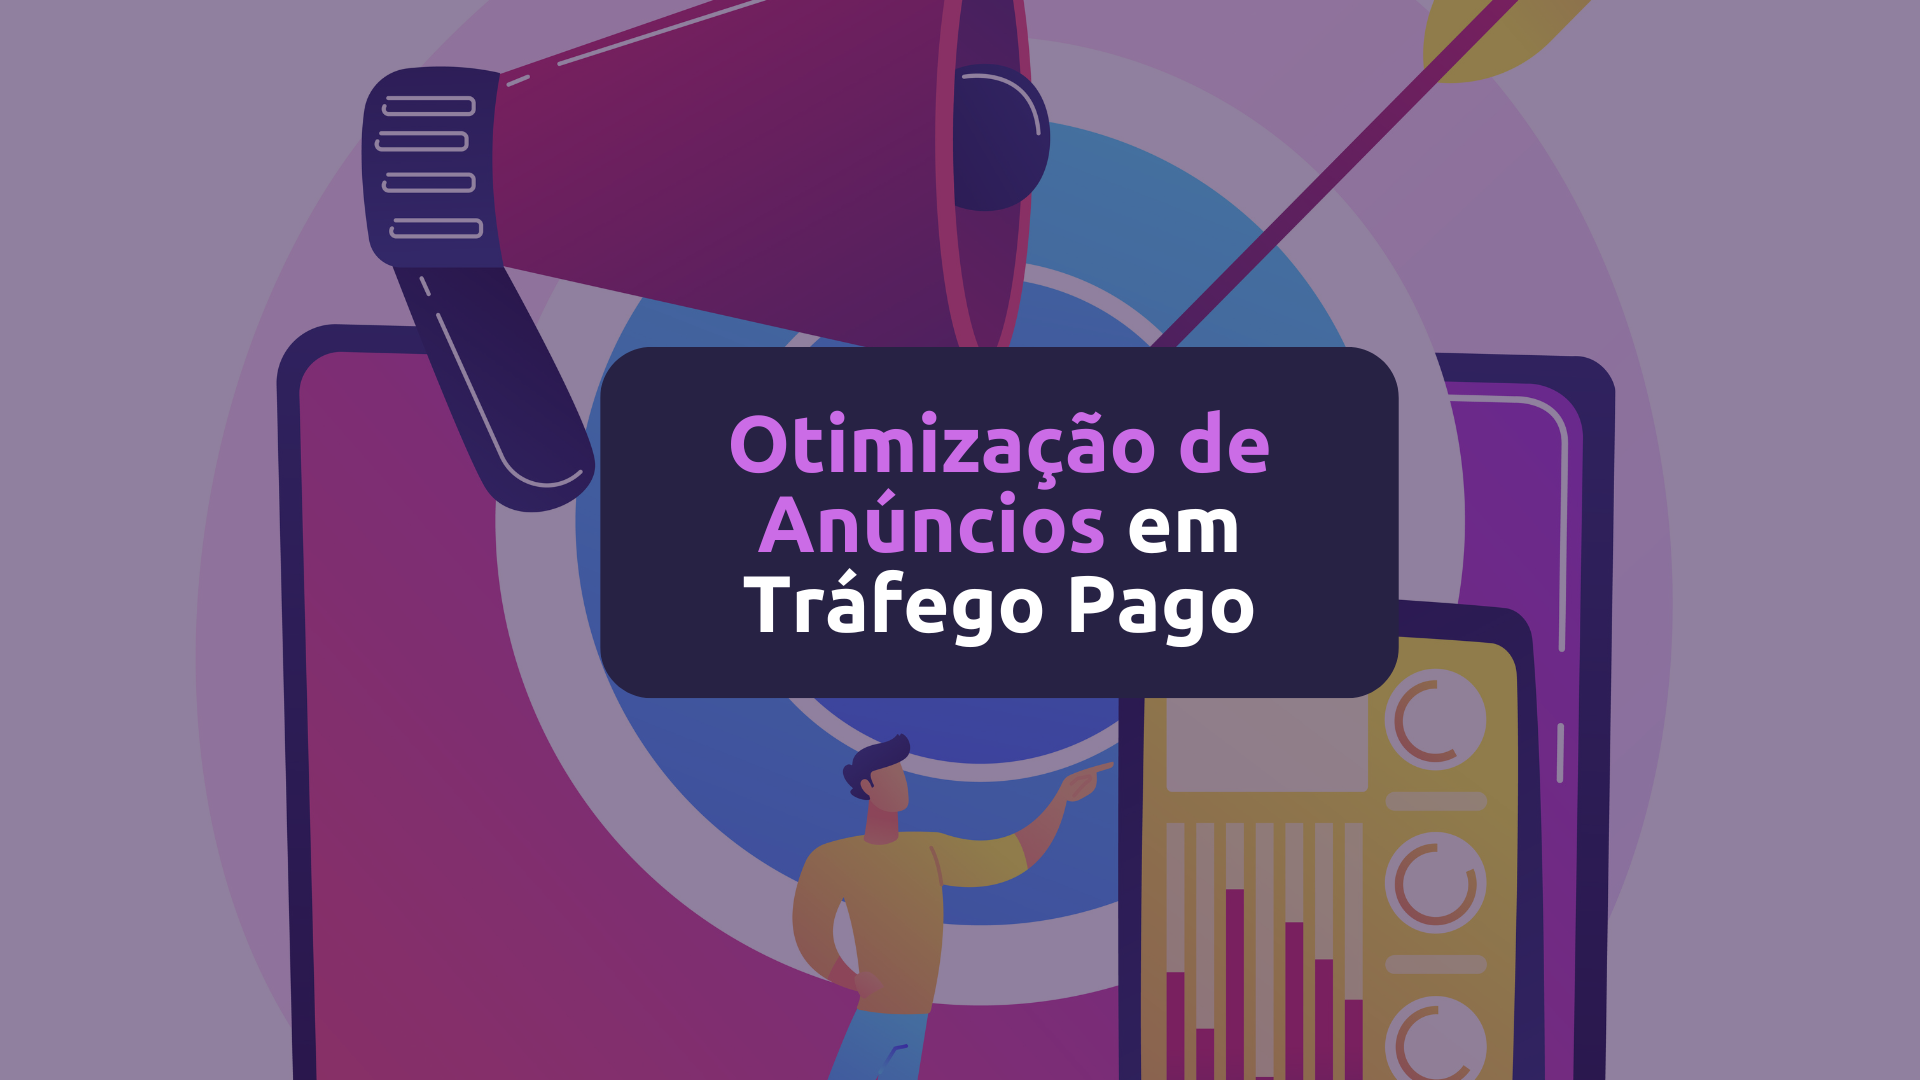 Otimização de Anúncios em Tráfego Pago: A chave para resultados consistentes.